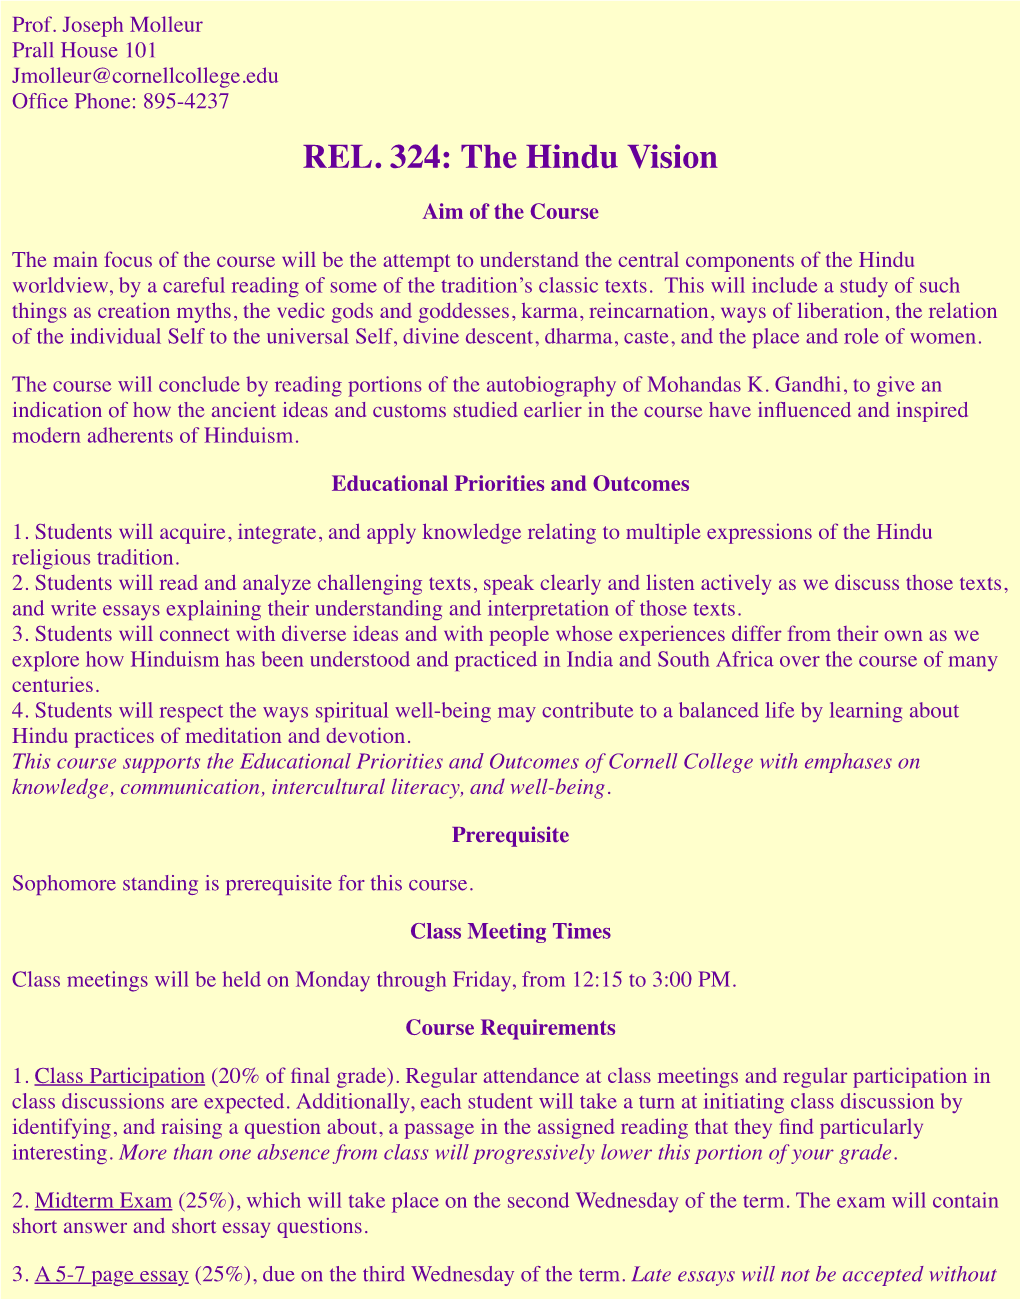 REL. 324: the Hindu Vision